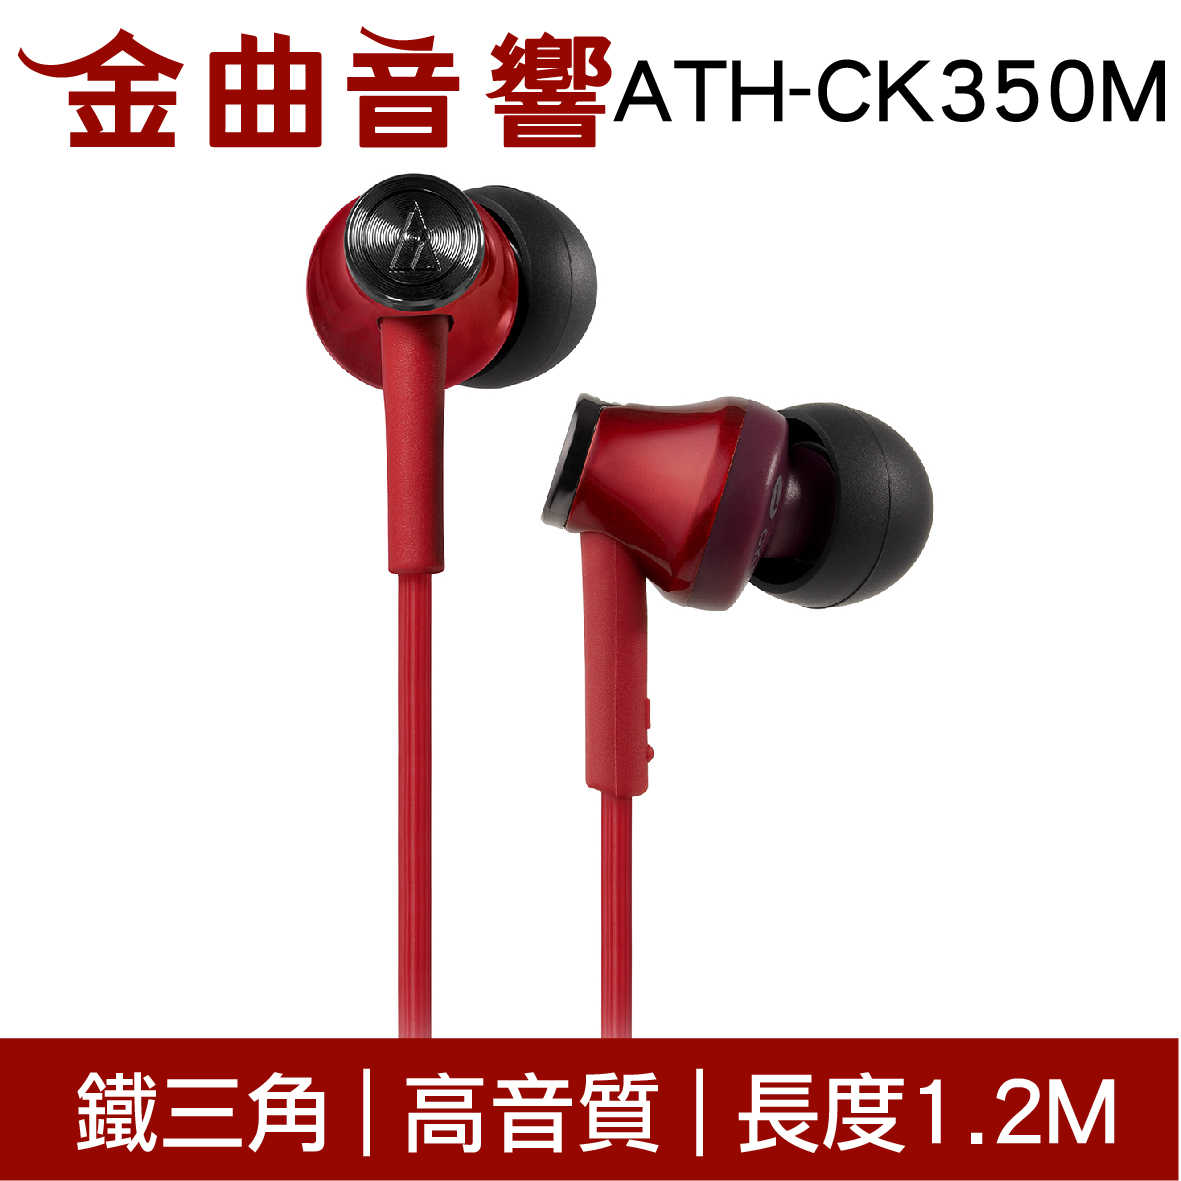 鐵三角 ATH-CK350M 灰色 高音質耳道式耳機 | 金曲音響